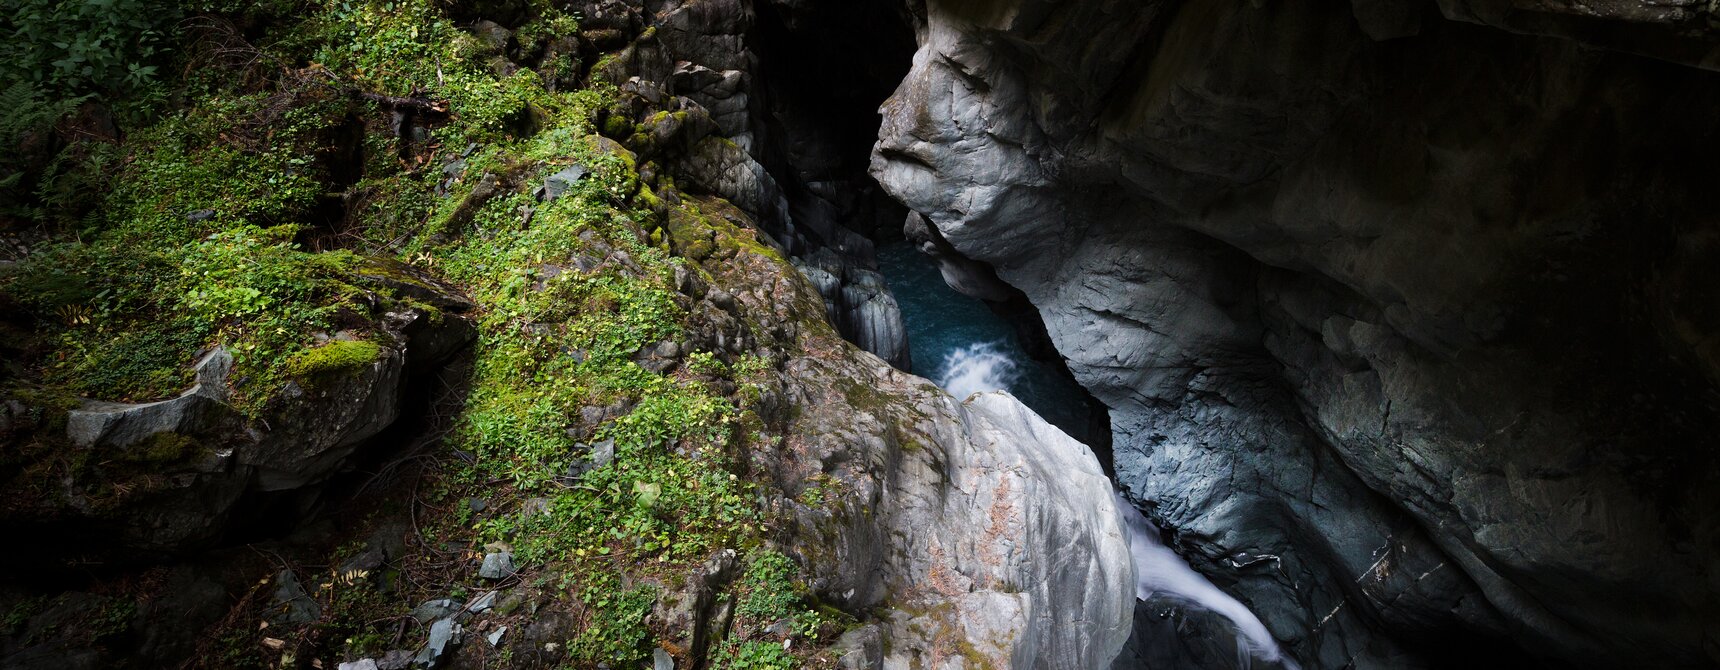 Gorner Gorge blue water play between fauna and rock | © Pascal Gertschen 